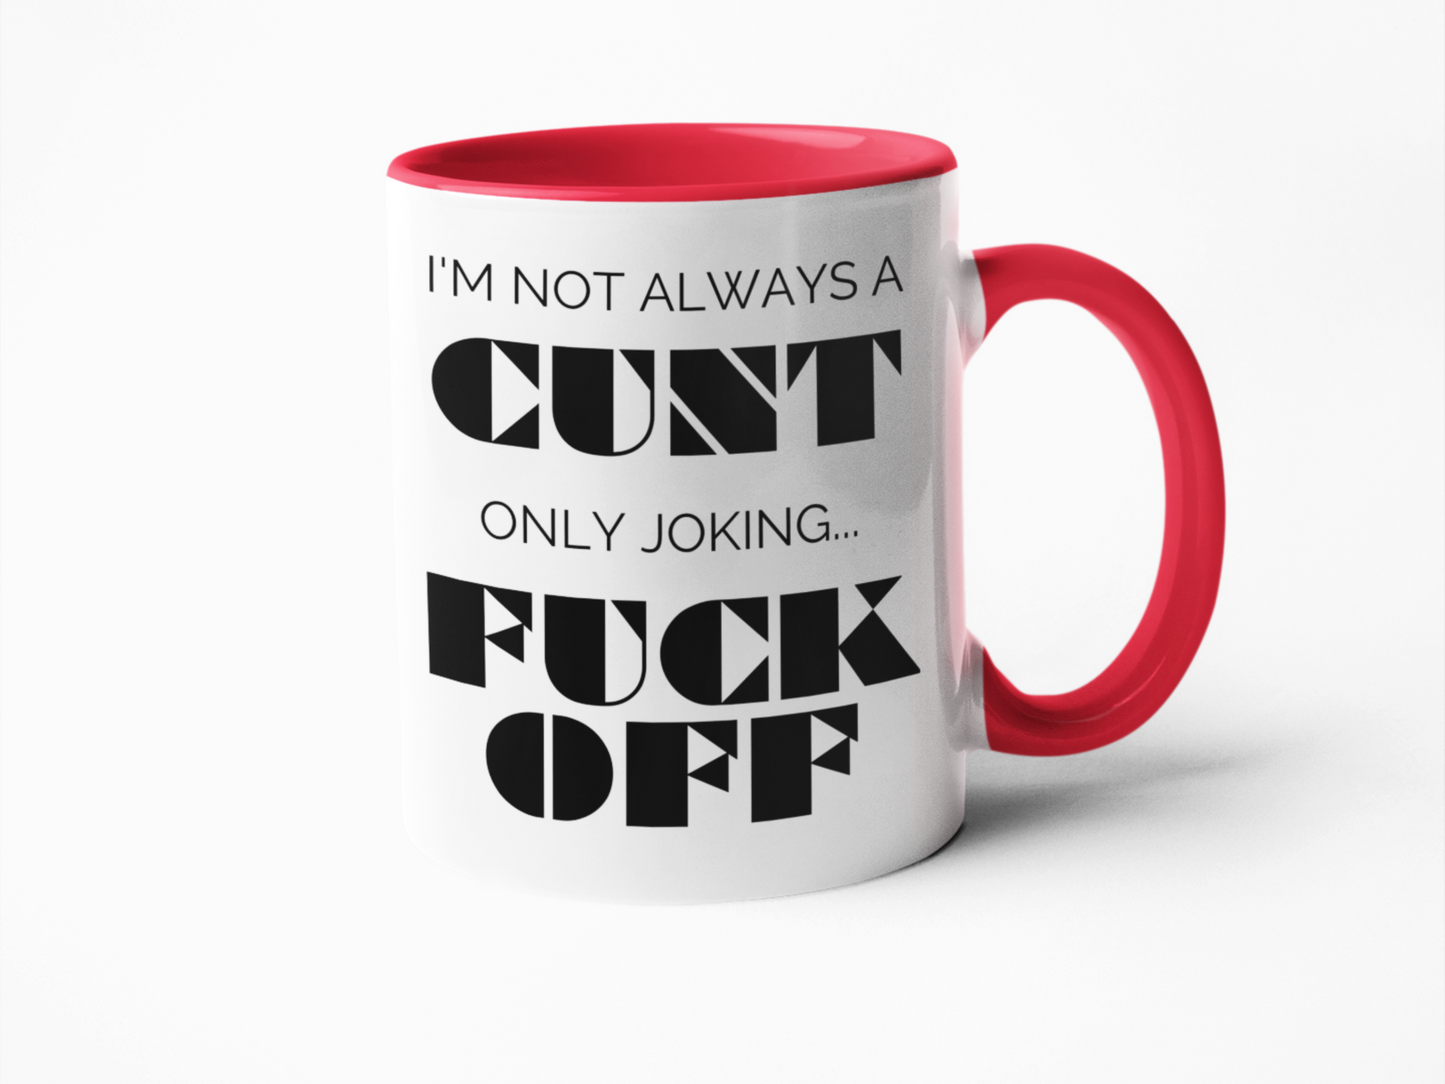 Not always a cunt funny coffee mug